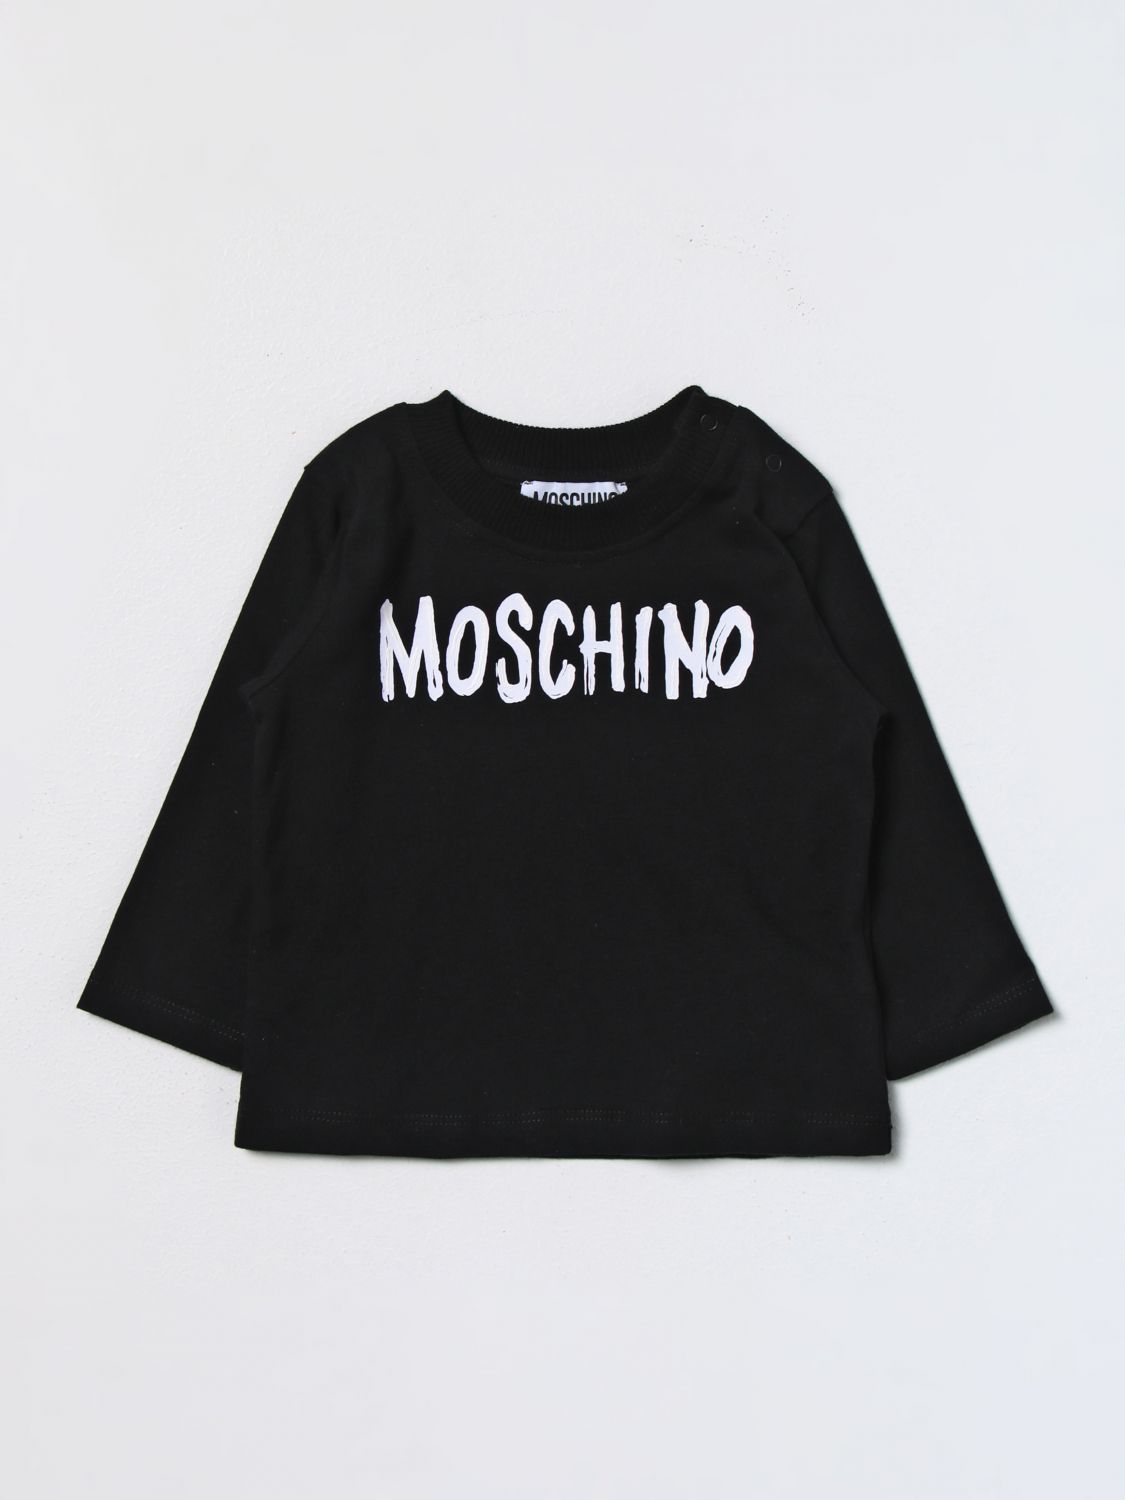 MOSCHINO BABY: t-shirt for baby - Black | Moschino Baby t-shirt ...